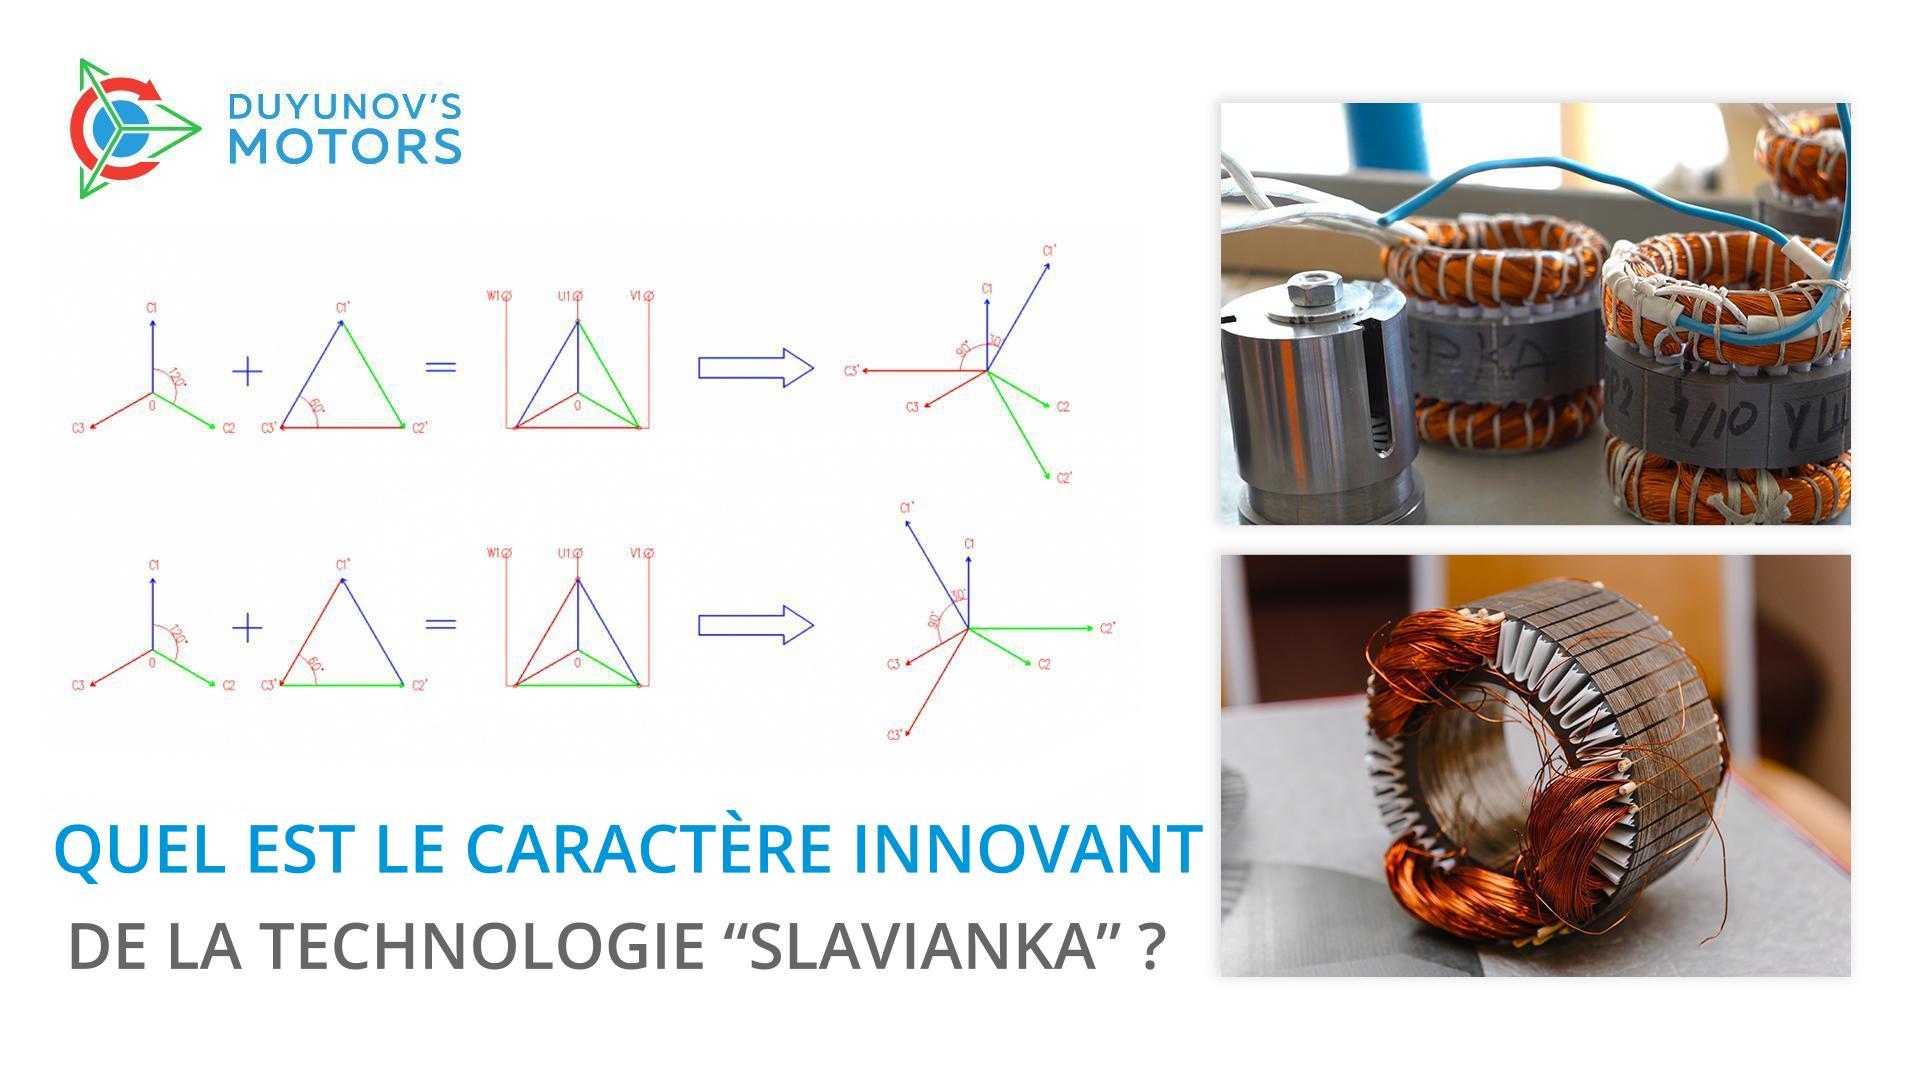 Quel est le caractère innovant de la technologie "Slavianka" ?